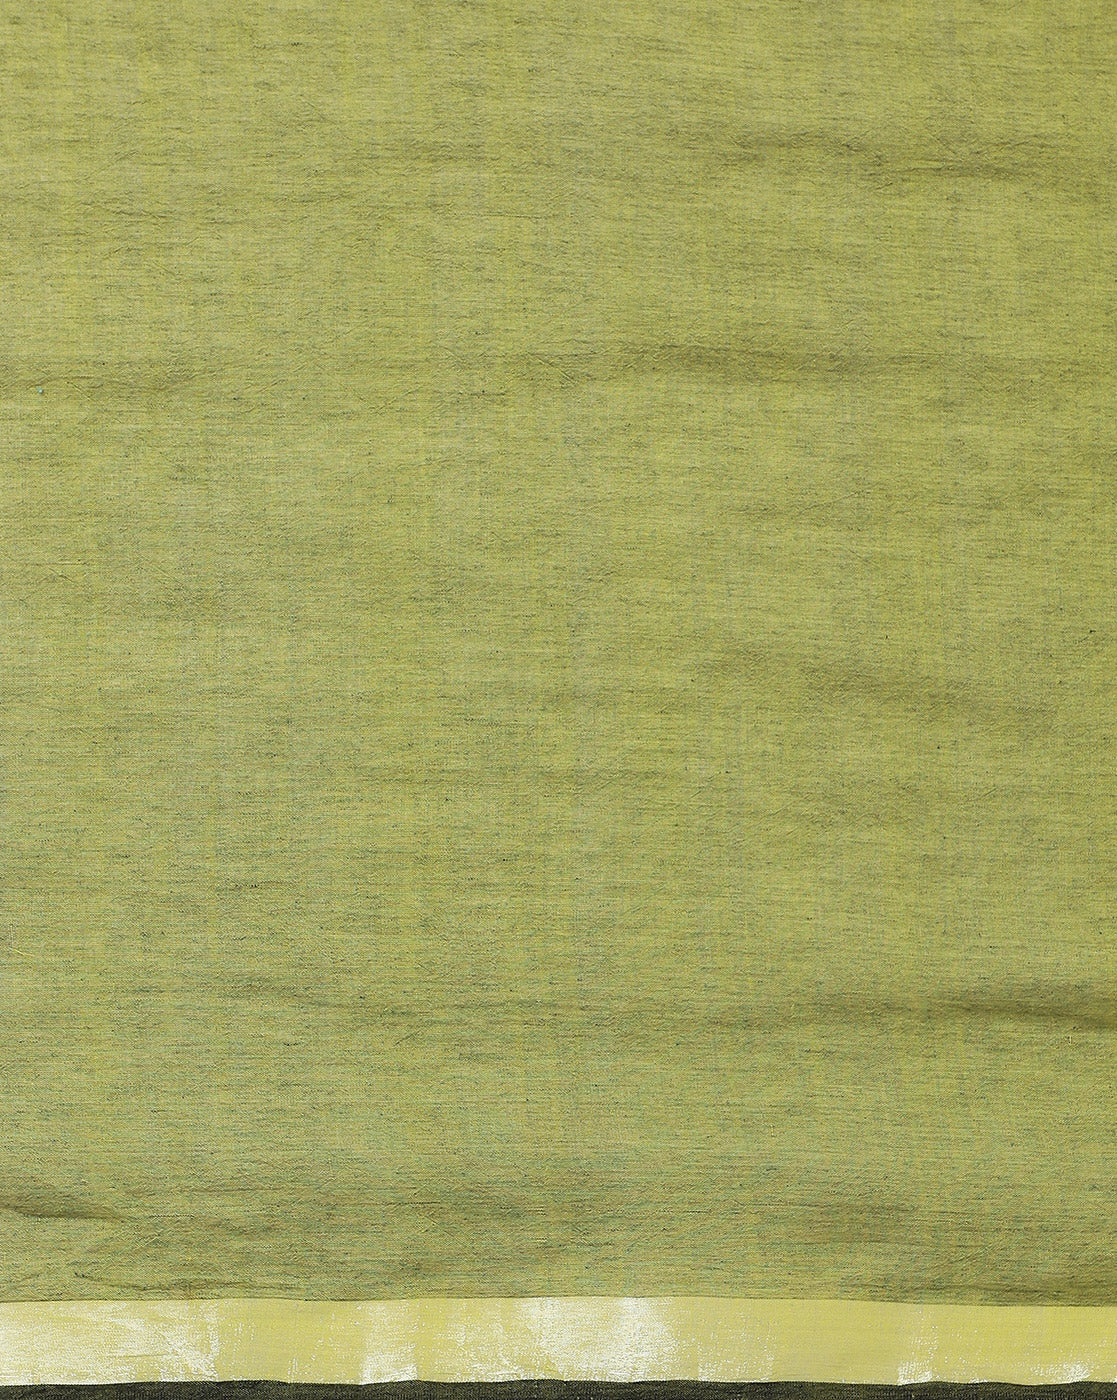 Colour block Cotton Saree with pompoms